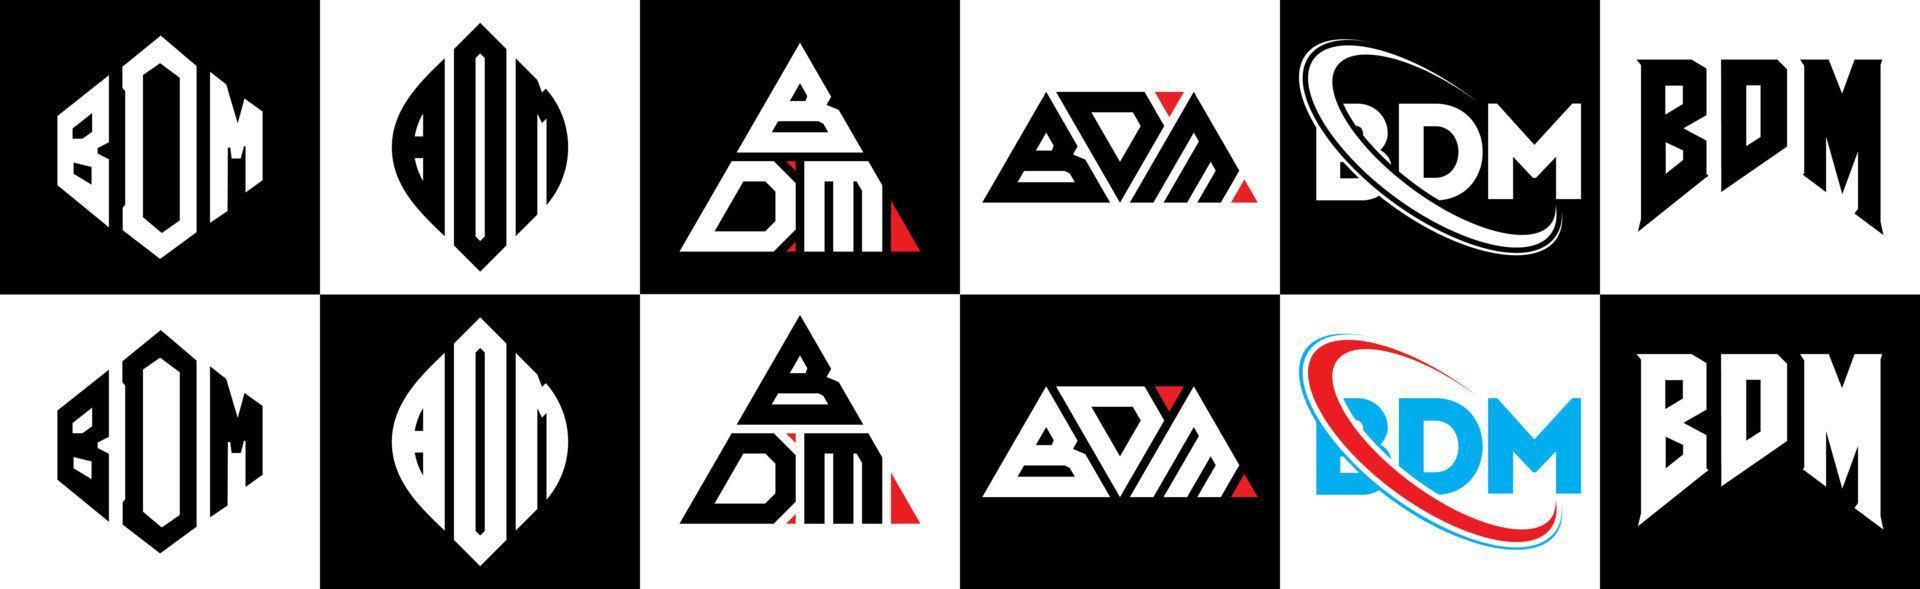 Bdm-Buchstaben-Logo-Design in sechs Stilen. bdm-polygon, kreis, dreieck, sechseck, flacher und einfacher stil mit schwarz-weißem buchstabenlogo in einer zeichenfläche. bdm minimalistisches und klassisches logo vektor